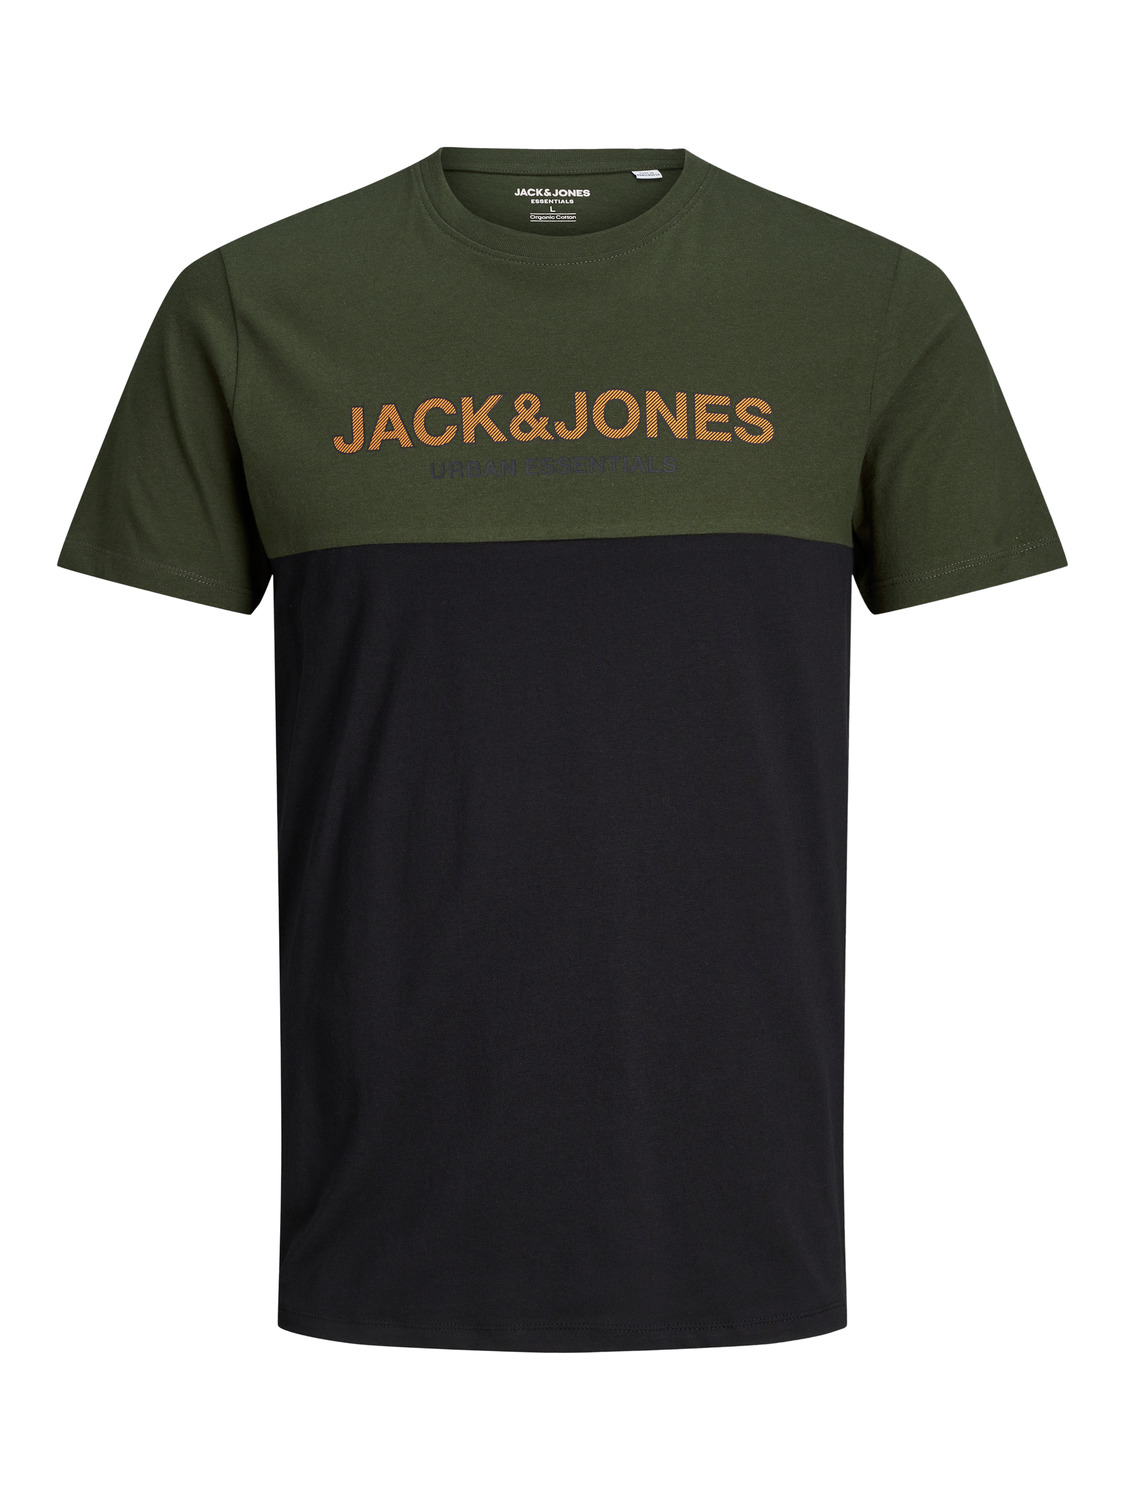 Jack & Jones Plus Koszulka Urban w kolorze Ciemnozielony, Czarnym 